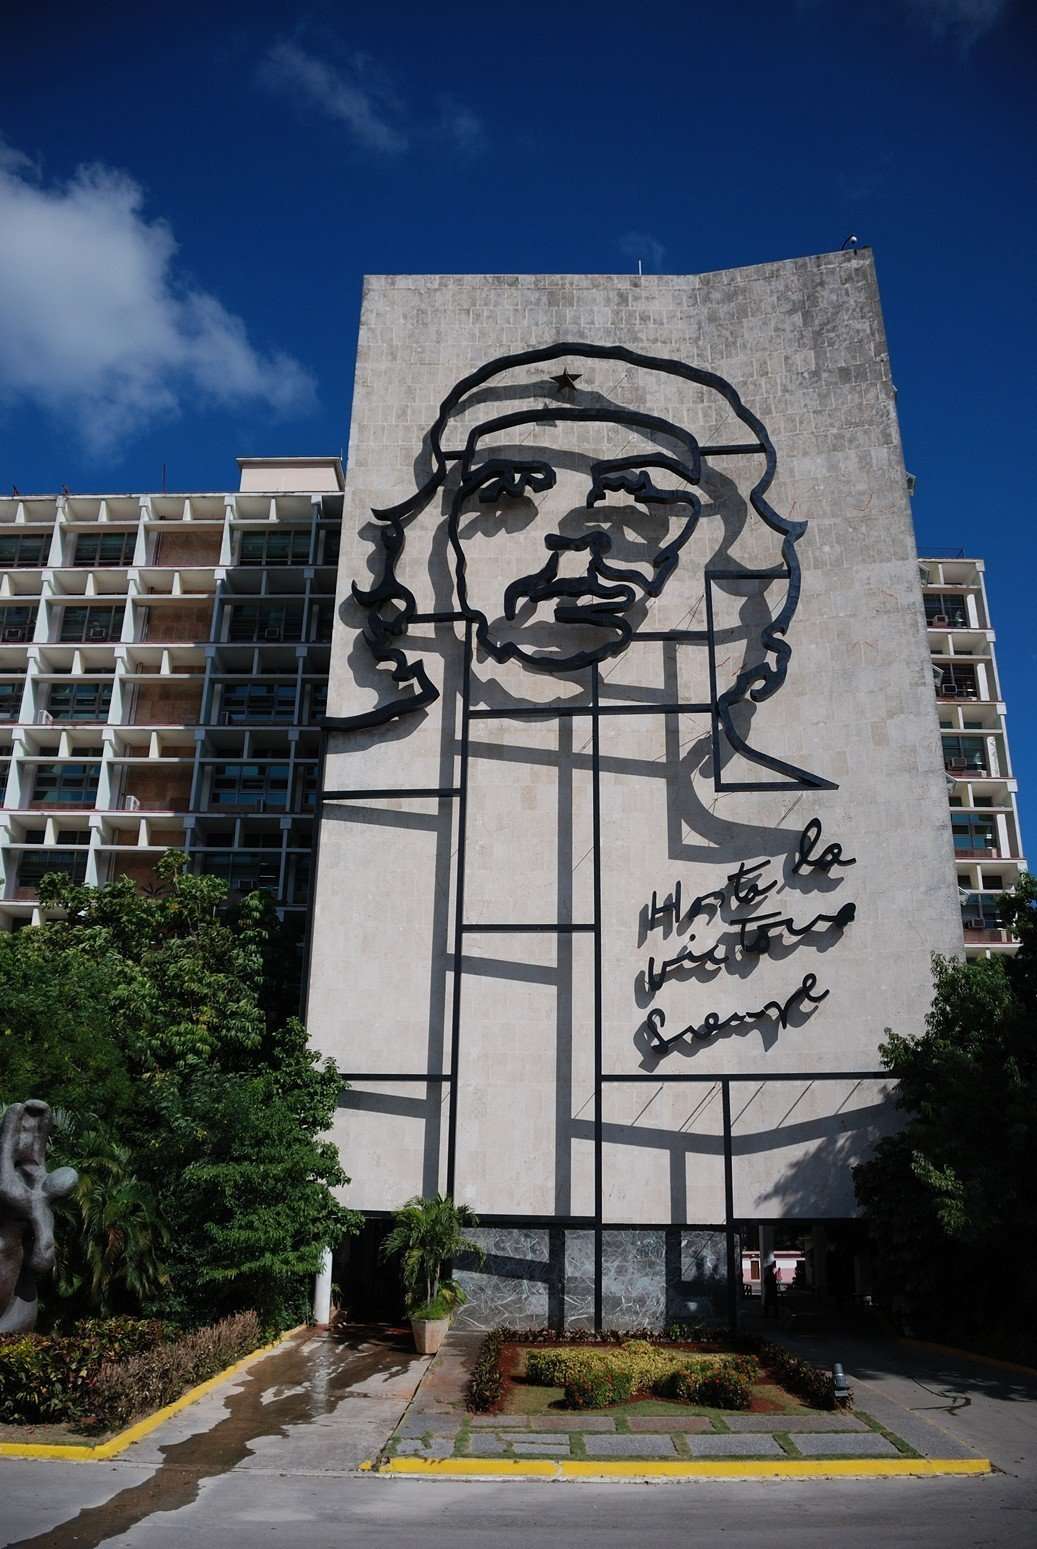 O Che στην Plaza de la Revolución